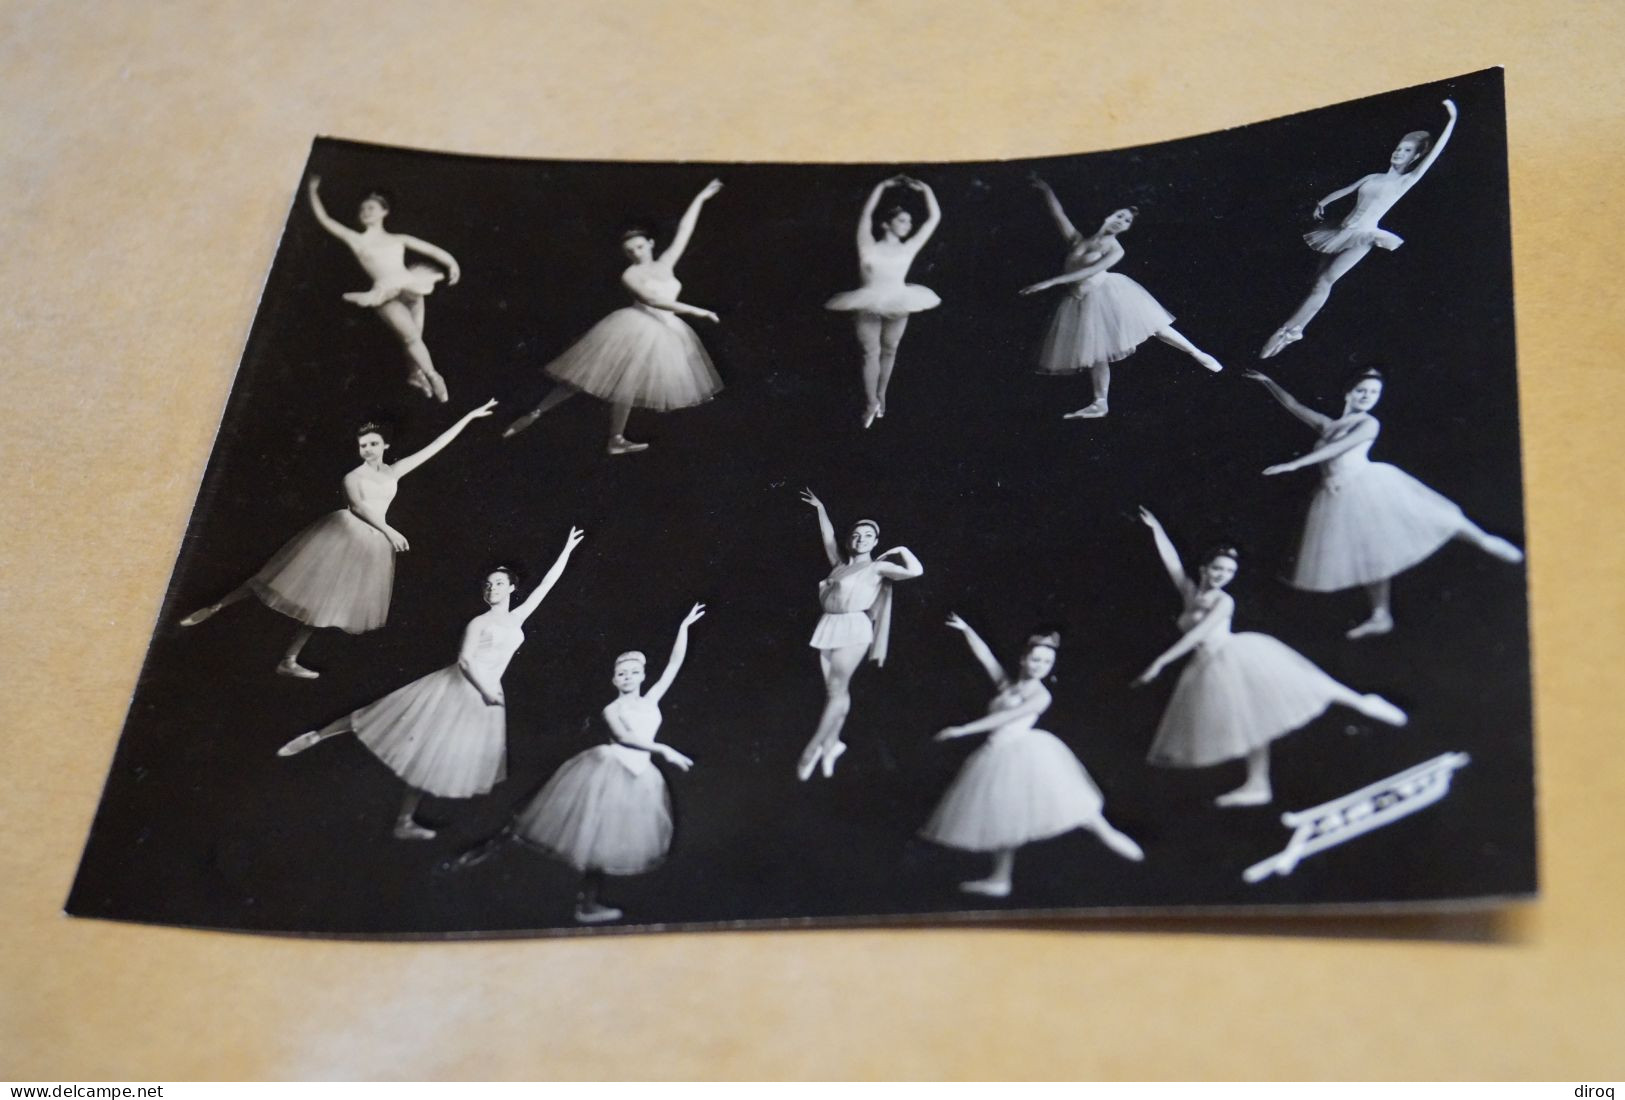 Superbe Photo Ancienne,Théatre De Verviers,1966-1967,Danseuses,photo Montage,16 Cm./12 Cm. - Famous People